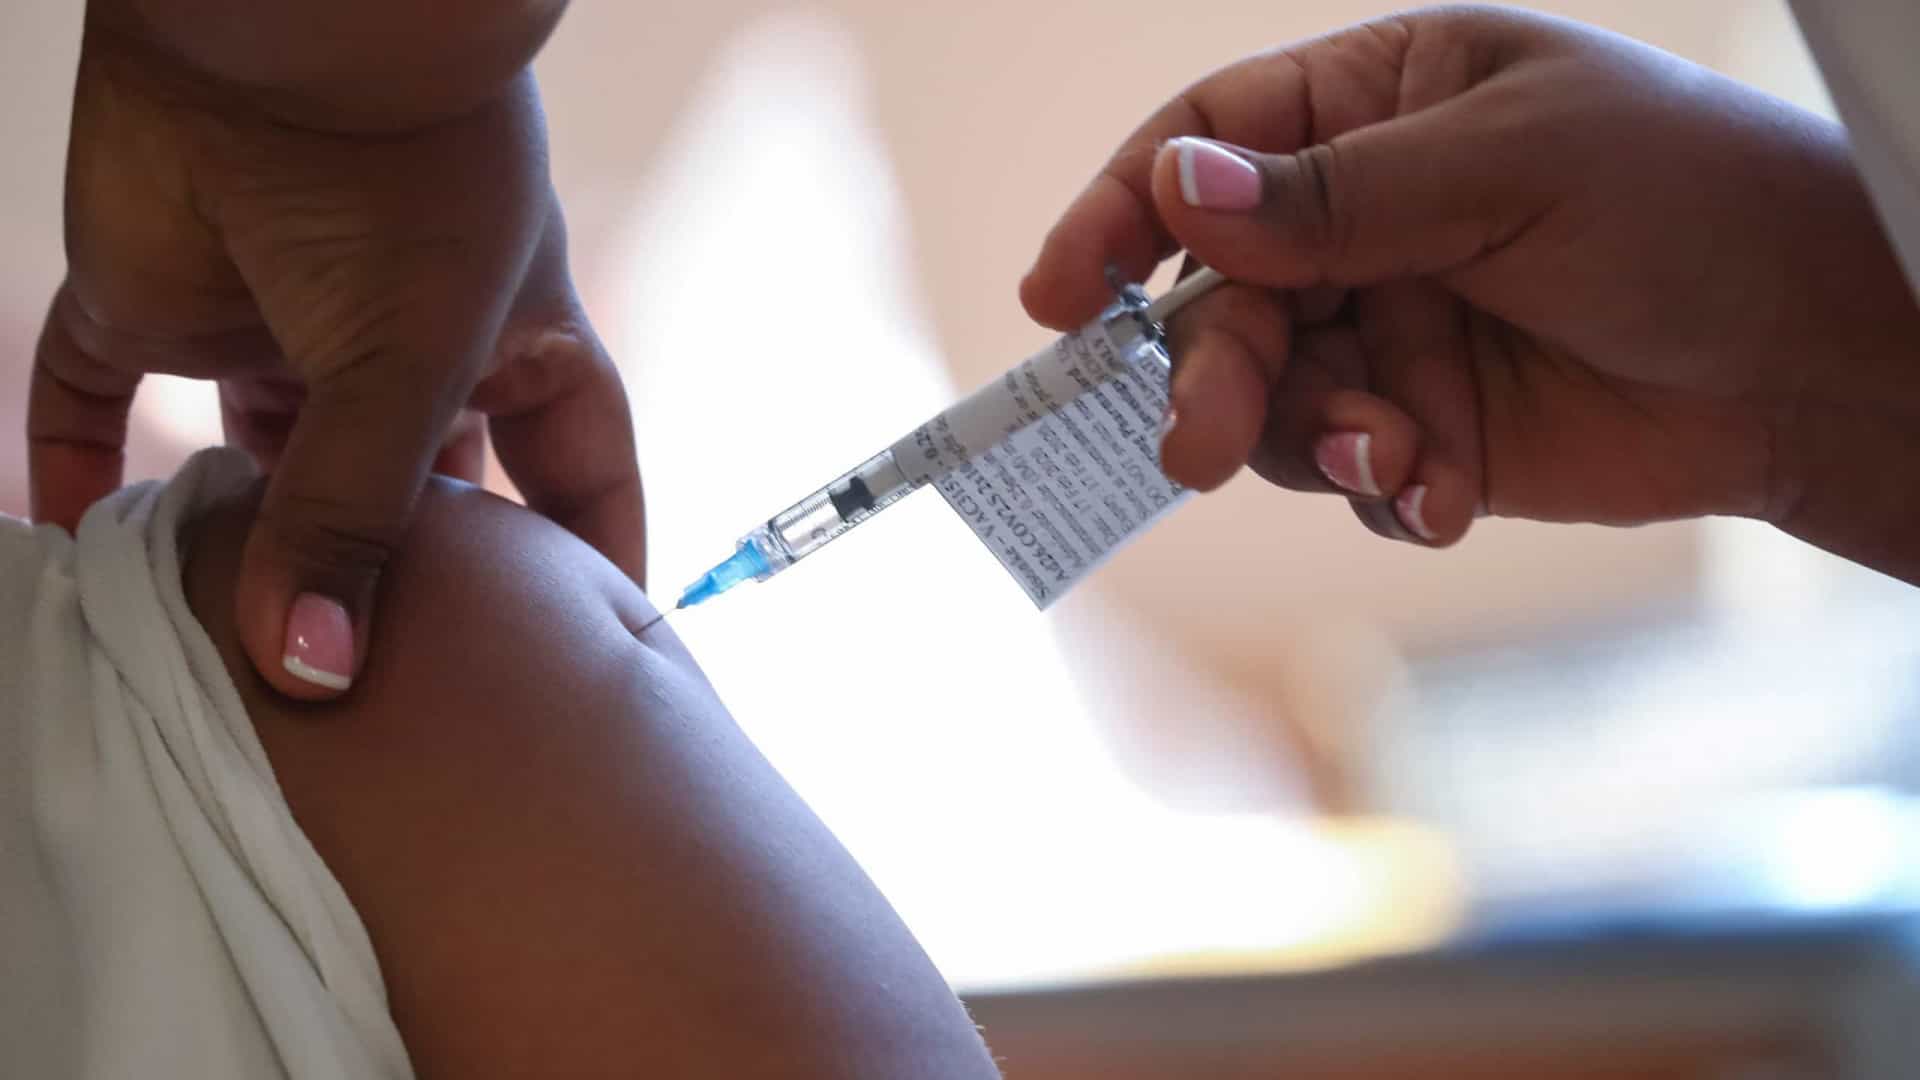 Continente africano quer produzir vacinas próprias